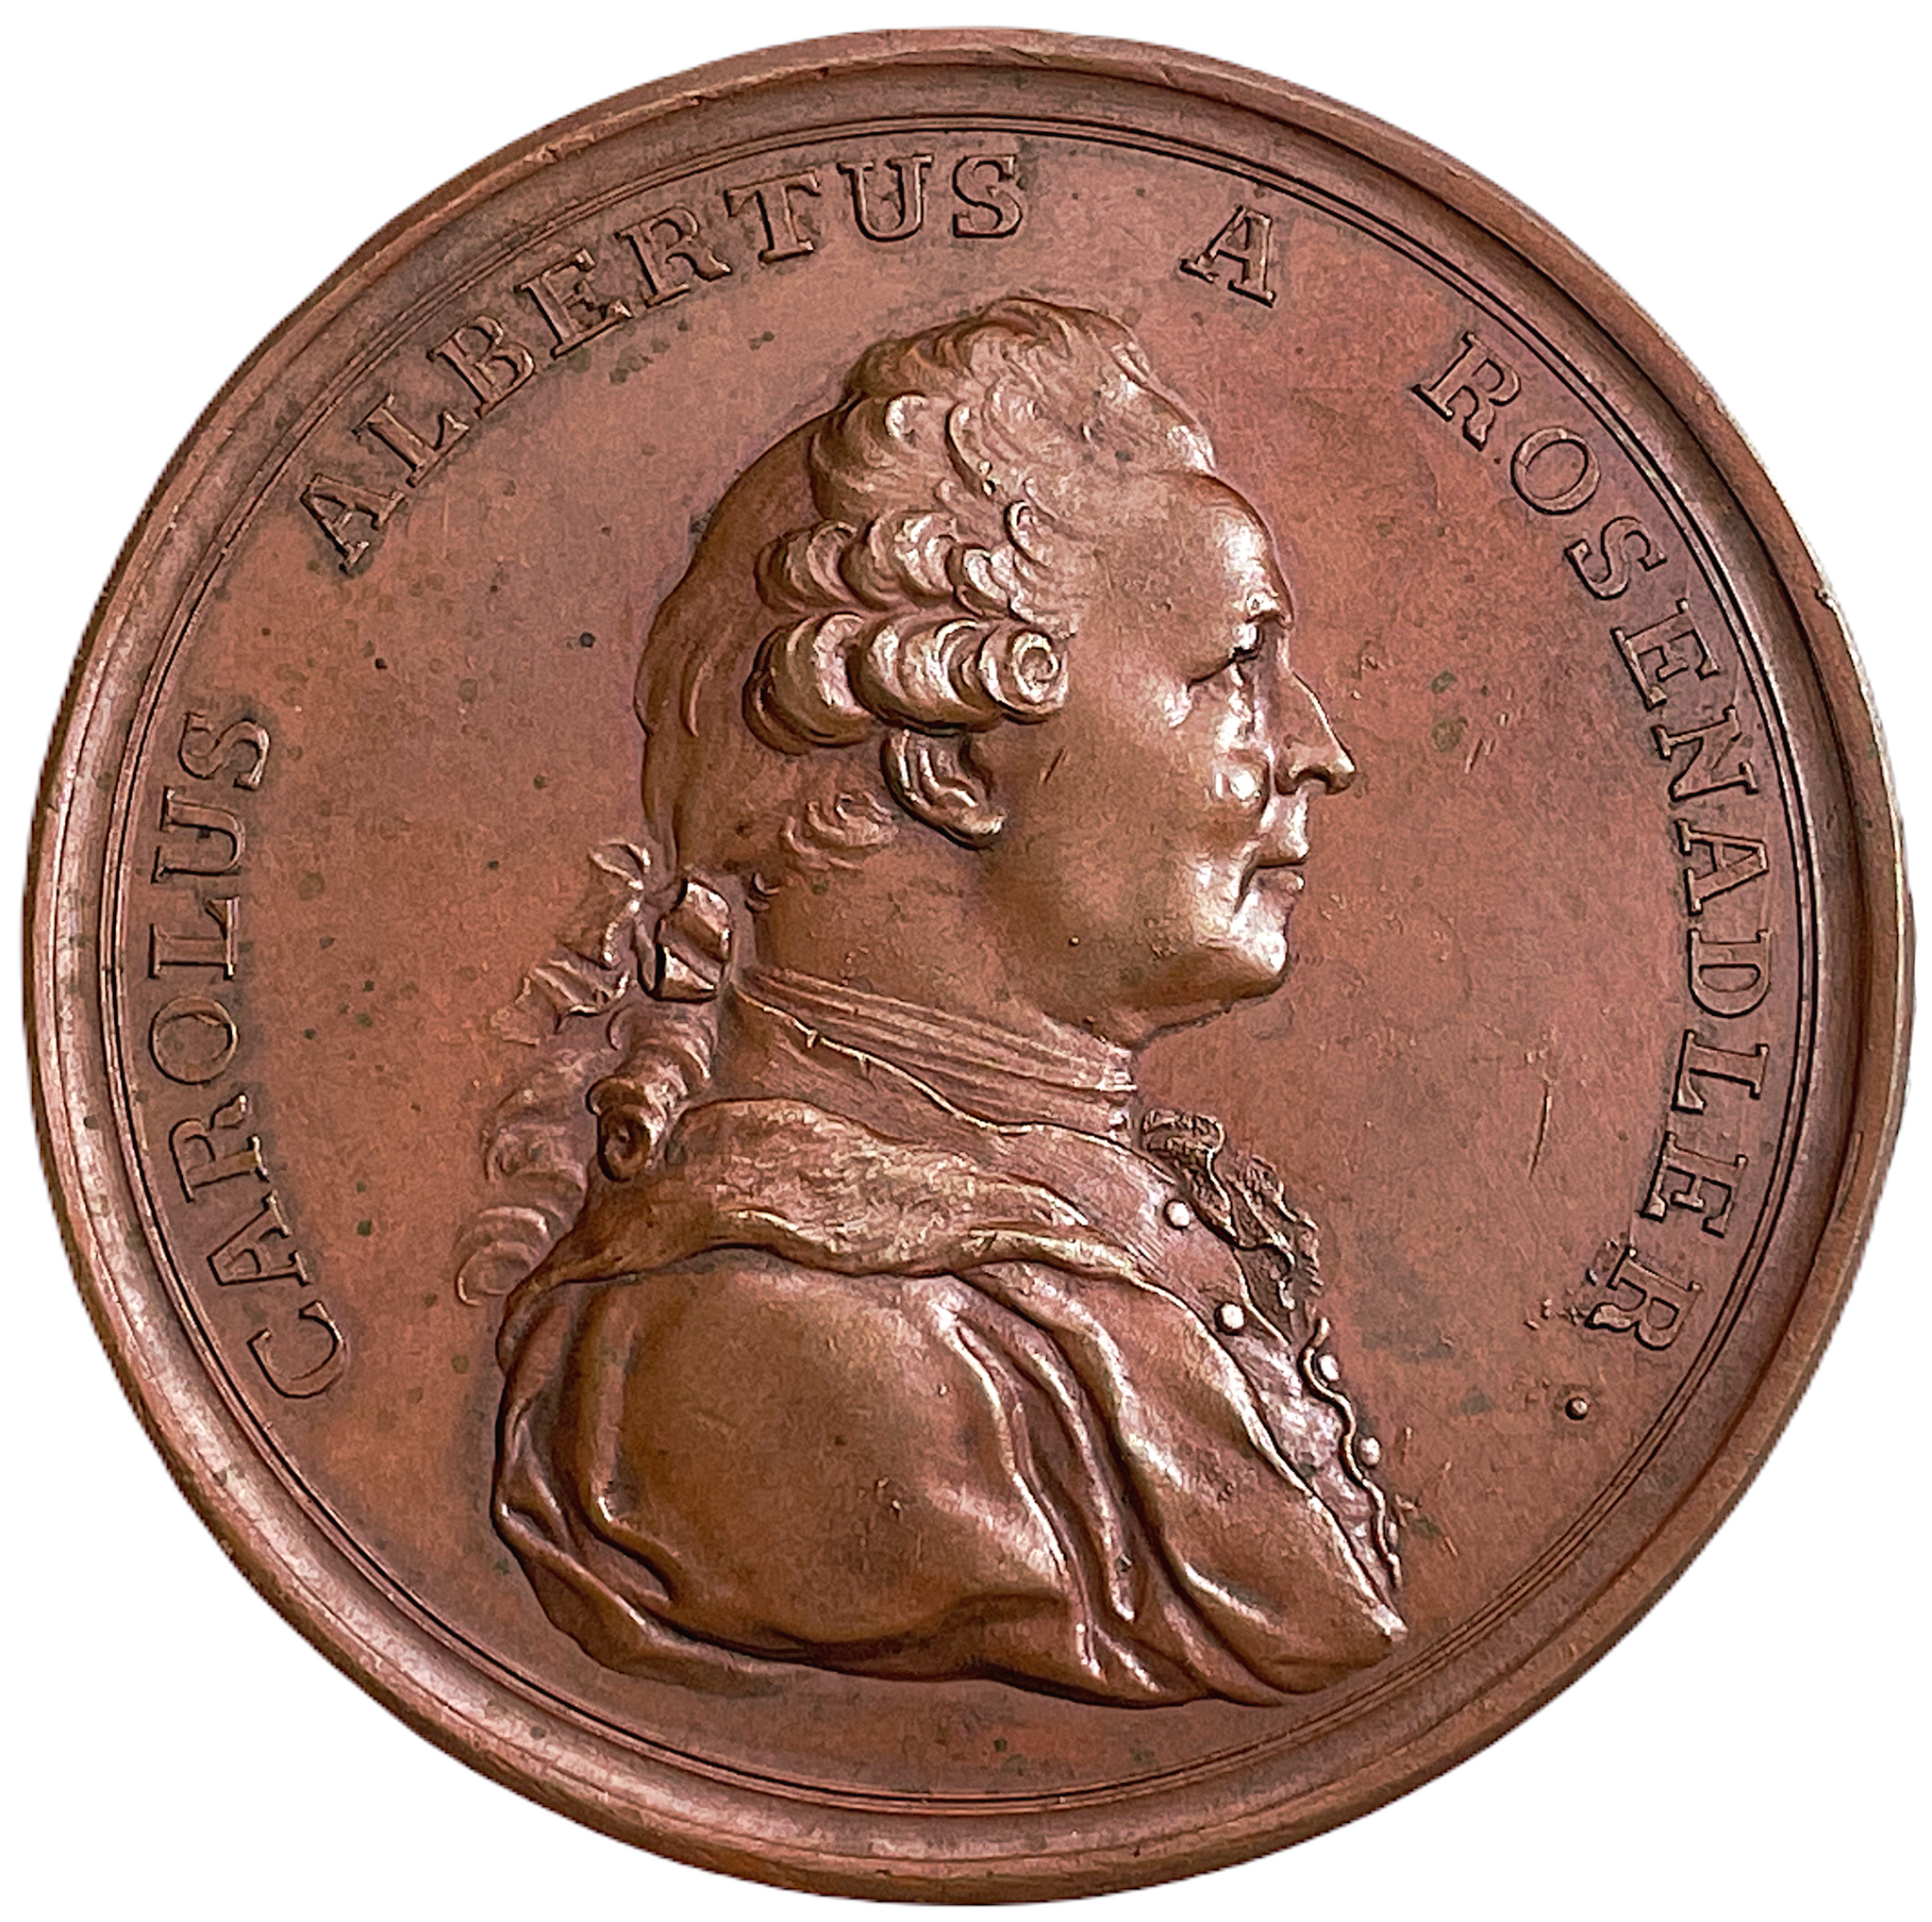 Statssekreterare Karl Albrekt Rosenadler 1717-1799 av Gustaf Ljungberger